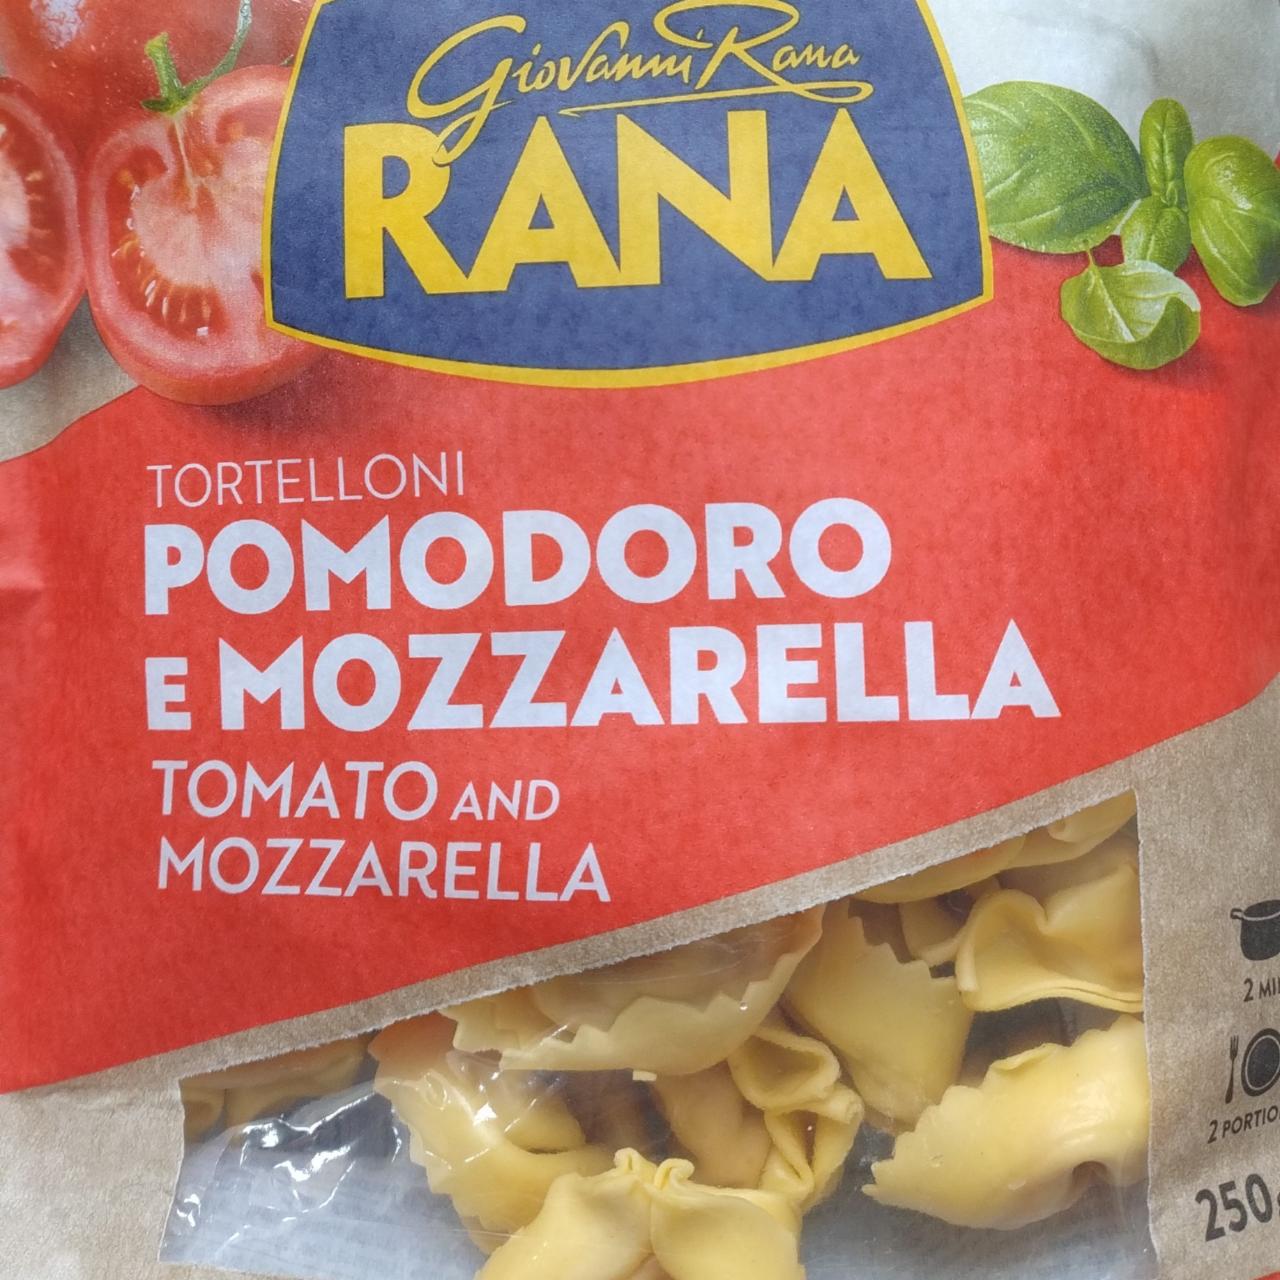 Zdjęcia - Tortelloni pomodoro e mozzarella Rana